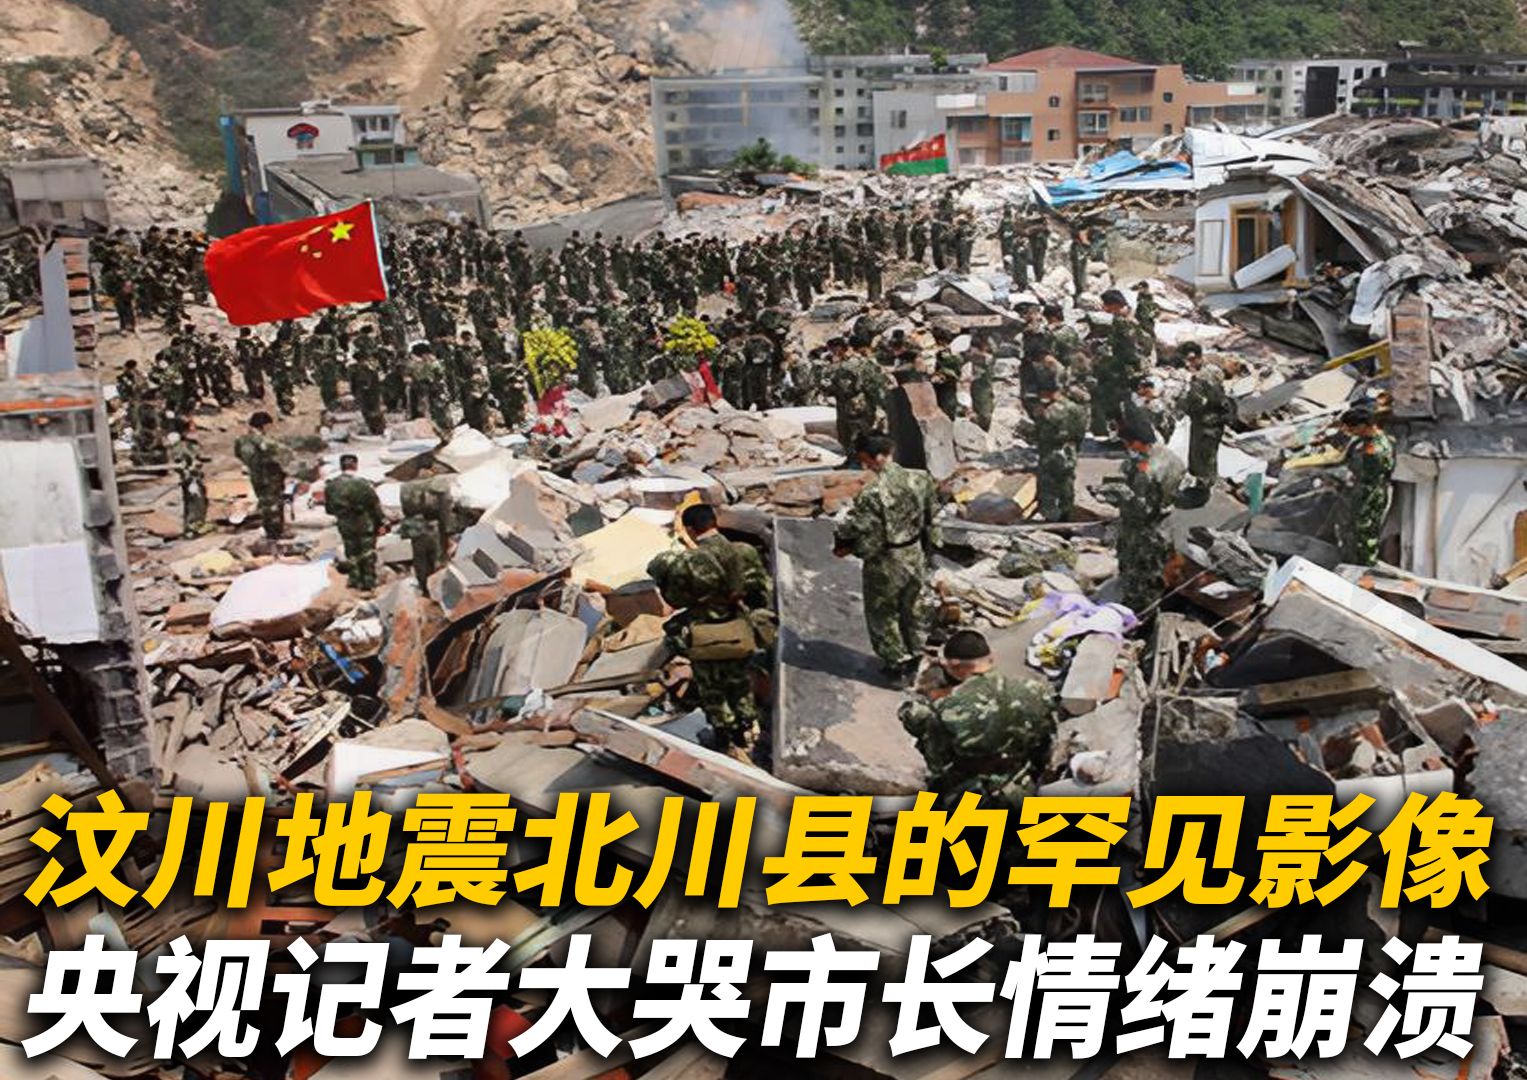 汶川地震中北川县罕见影像,央视记者放声大哭,四川市长情绪失控